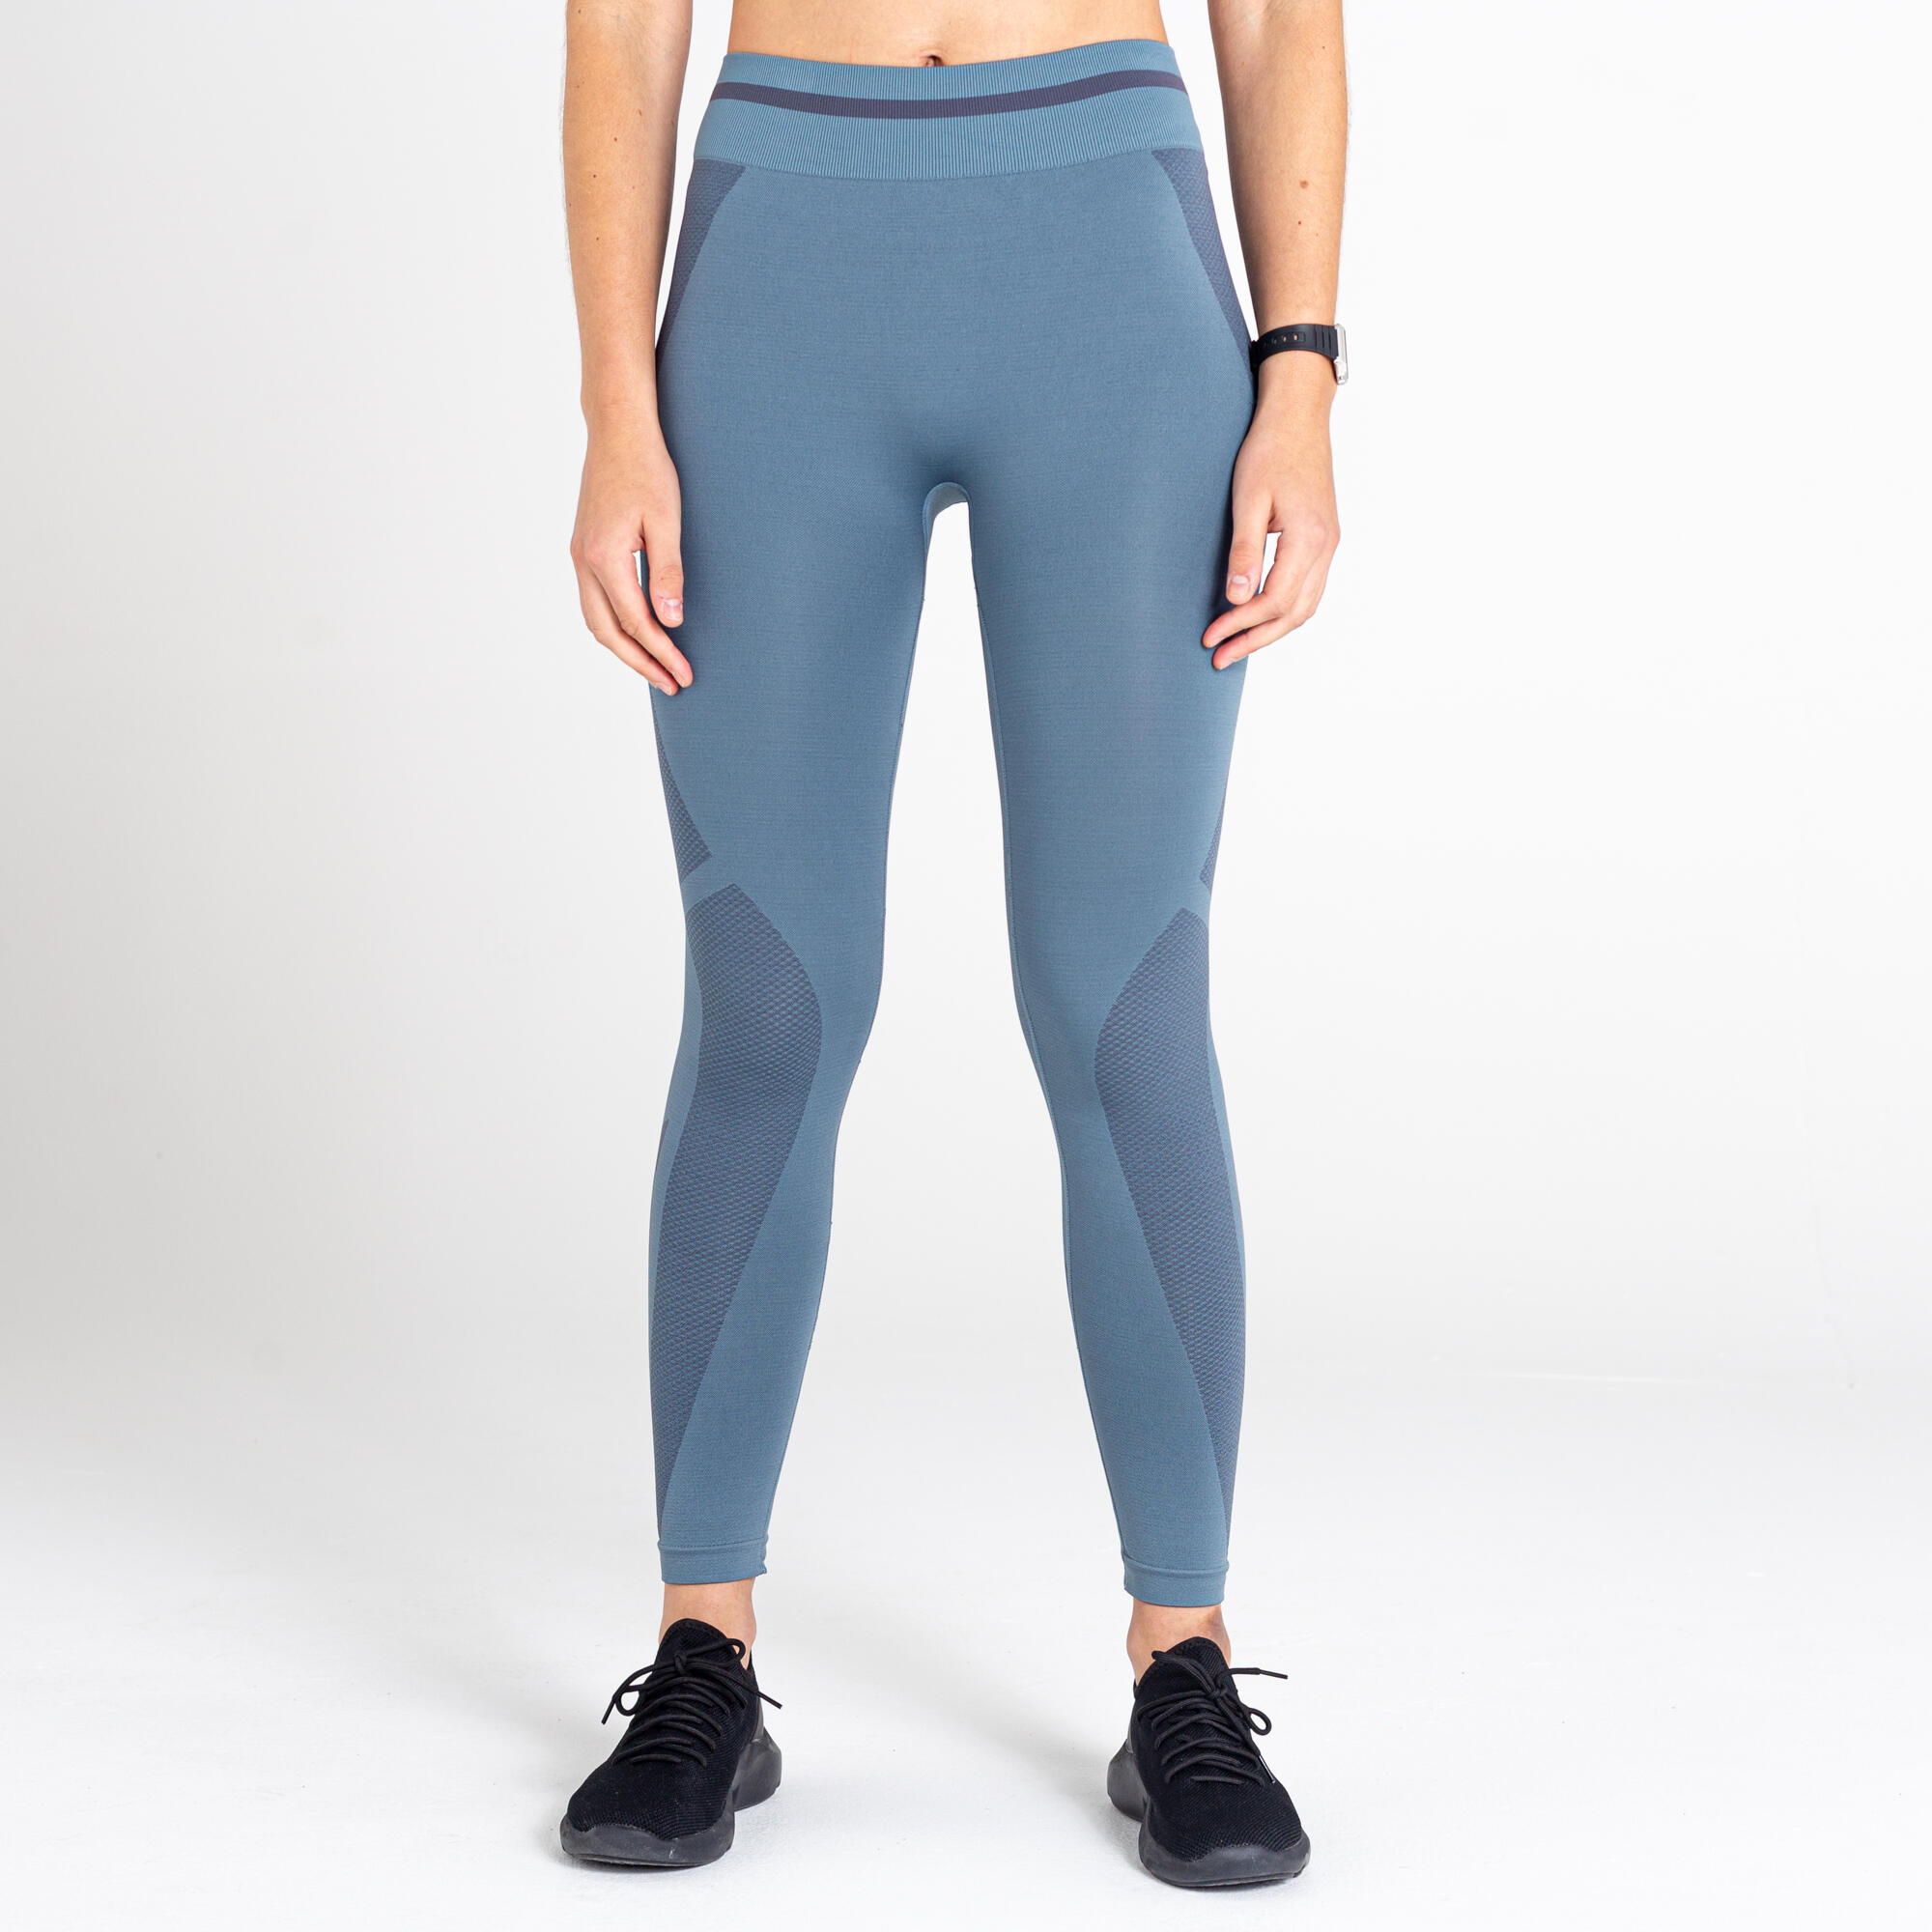 Dont Sweat It Women's Fitness Leggings - Blue Stone 2/5